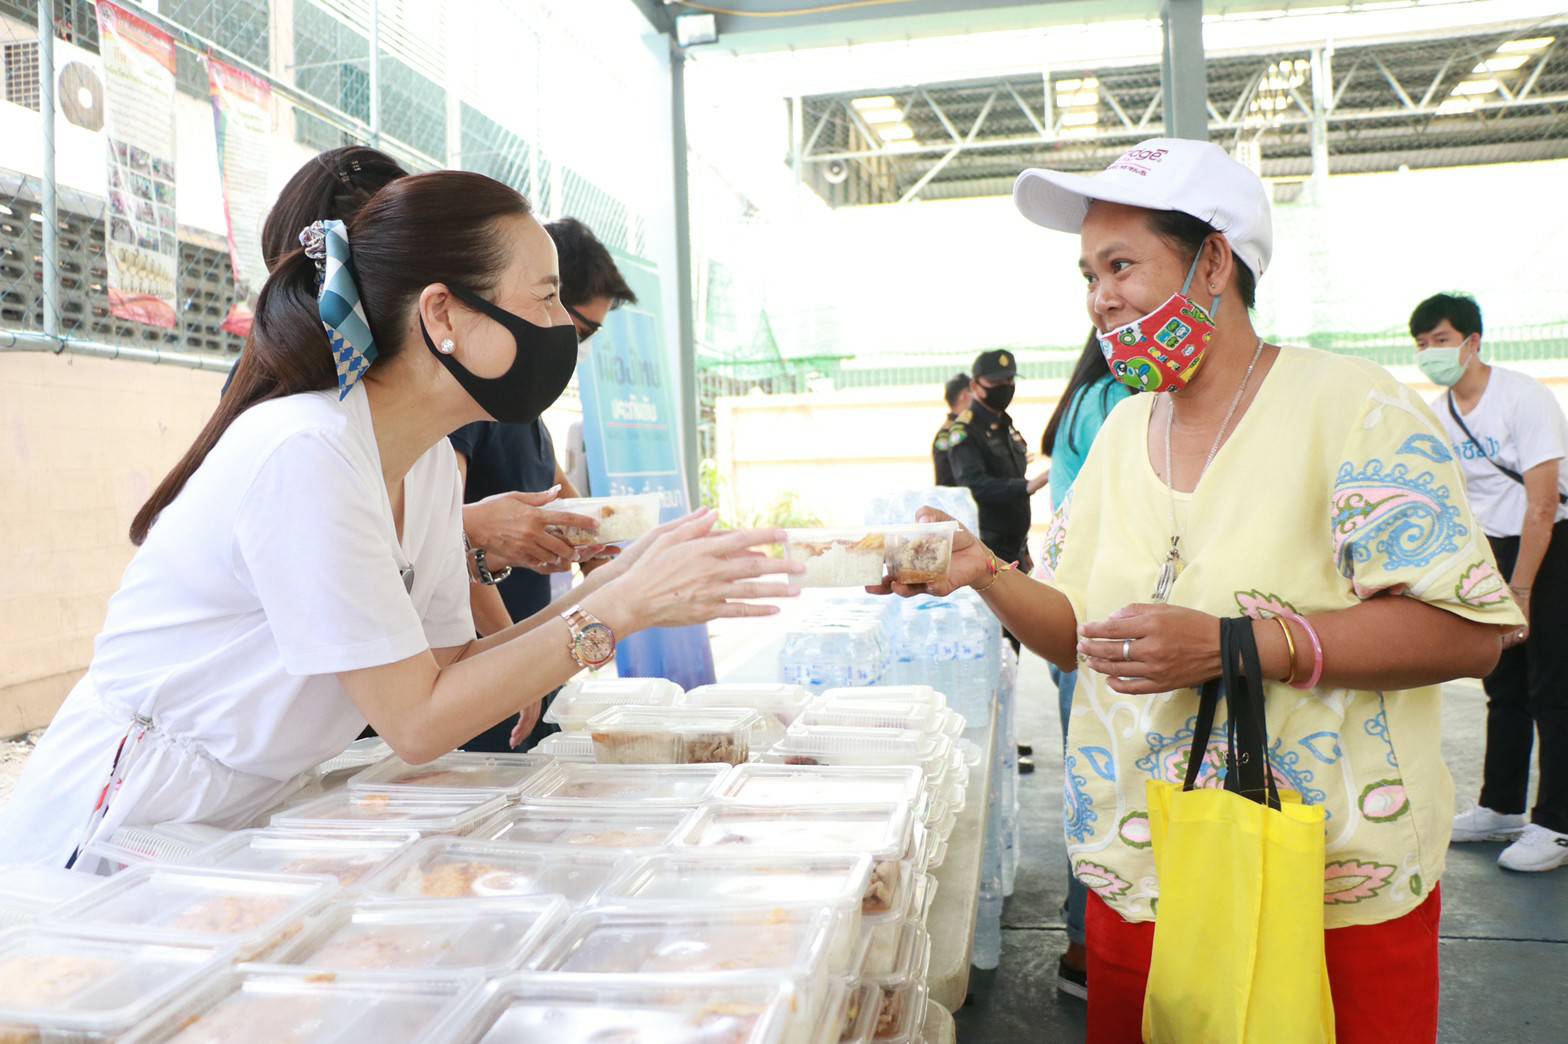 ครัวมาดาม ส่งต่อข้าวกว่า 135,000 กล่อง แทนกำลังใจให้คนไทยสู้ภัยโควิด